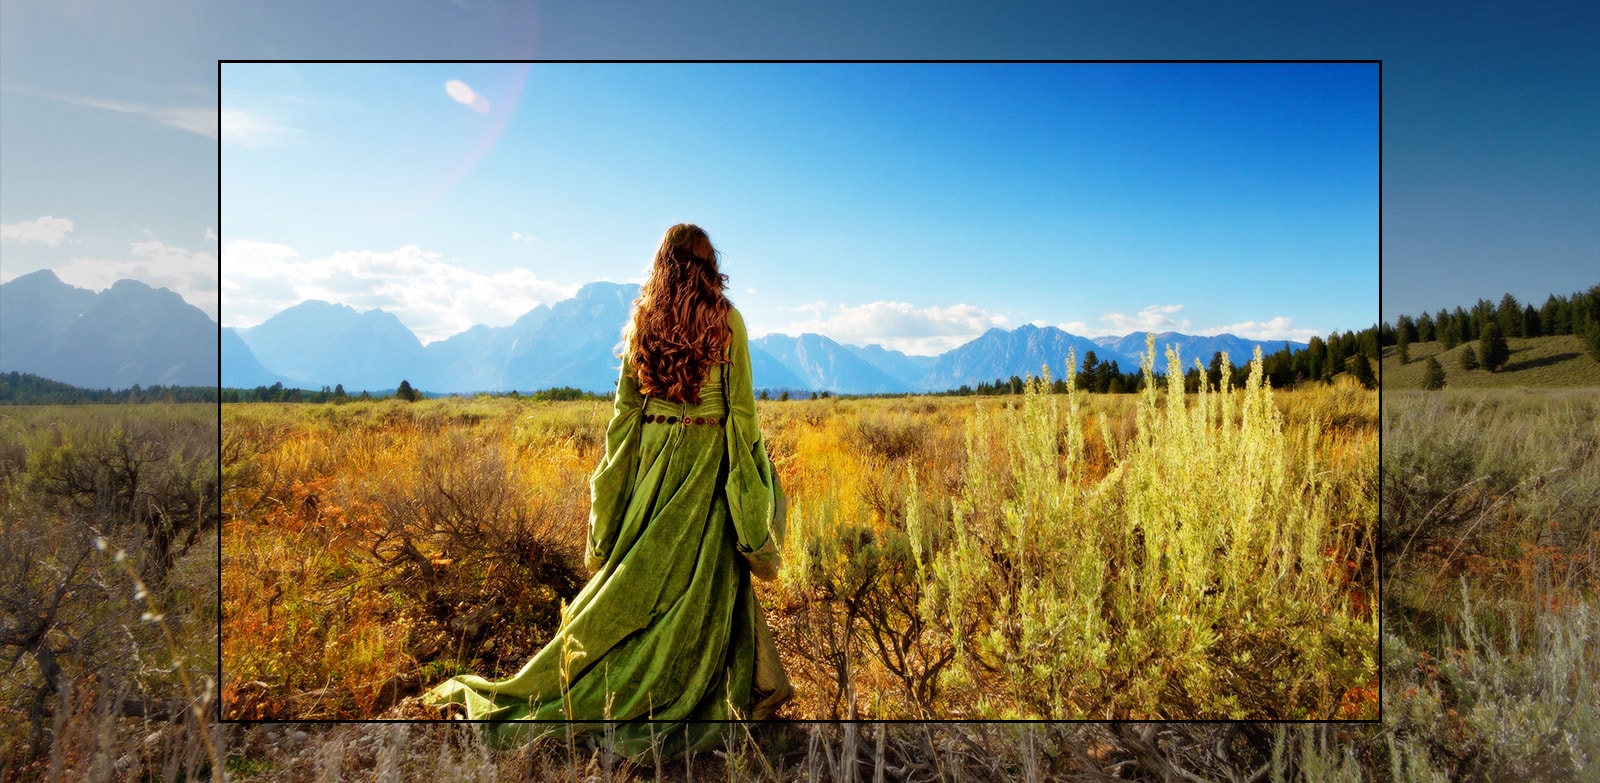 Uno schermo televisivo che mostra una scena di un film fantasy in cui una donna in piedi in un campo aperto guarda le montagne.